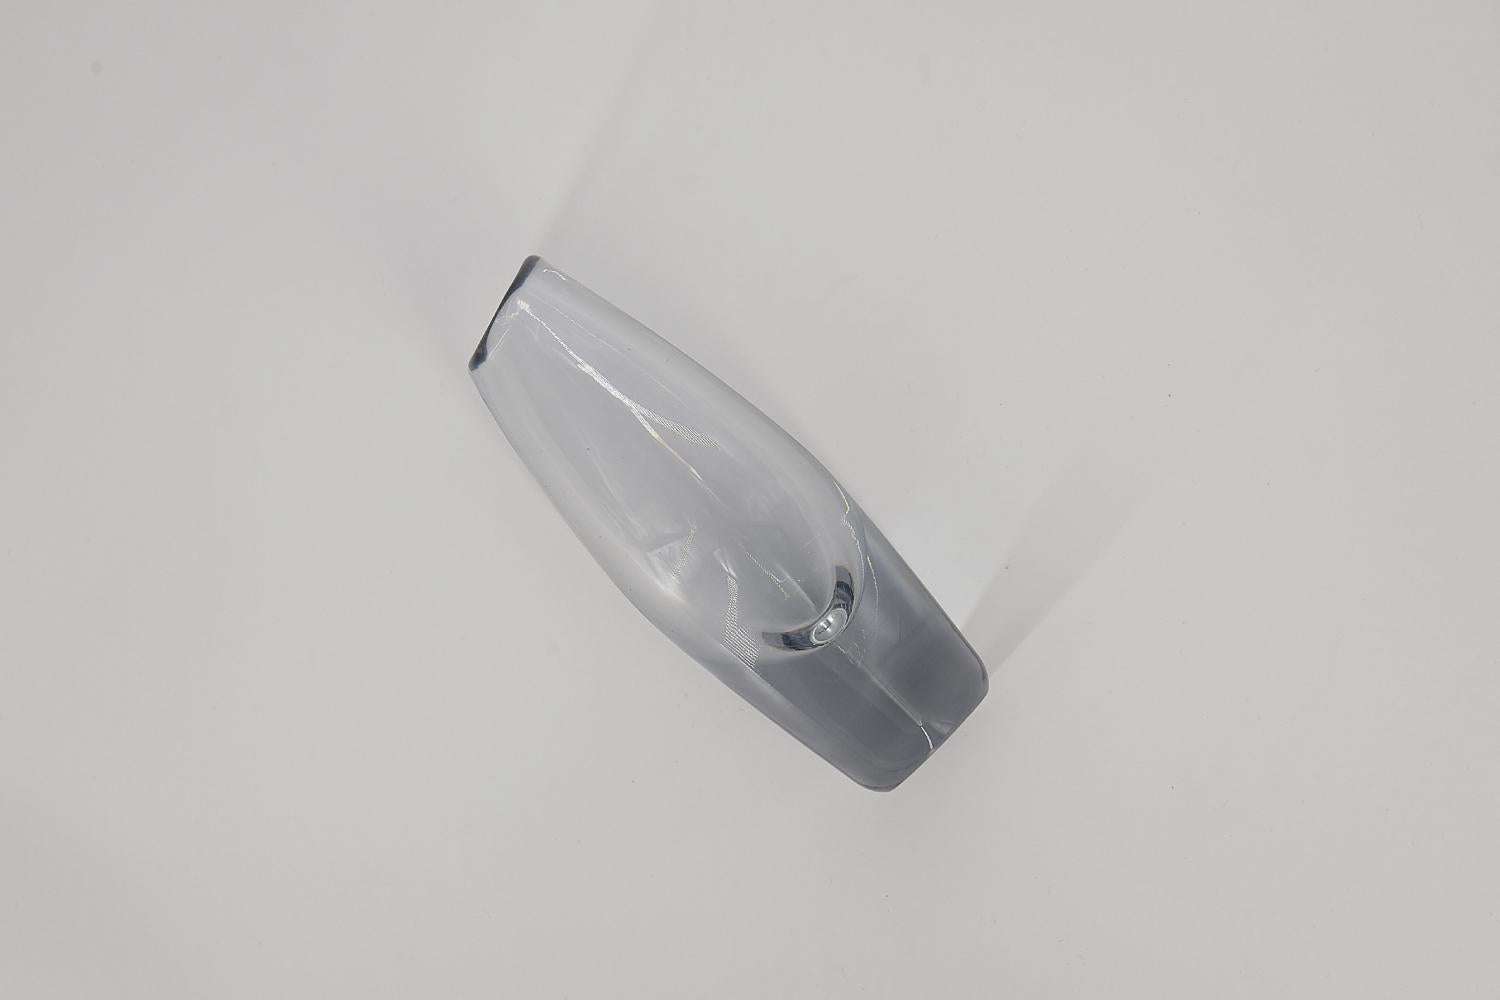 Diese transparente Vase wurde in den 1950er Jahren von Sven Palmquist für die schwedische Glashütte Orrefors entworfen. Die Vase ist aus Kunstglas gefertigt.

Sven Palmquist wurde 1906 in Lenhovda, Schweden, geboren. Am bekanntesten ist er für